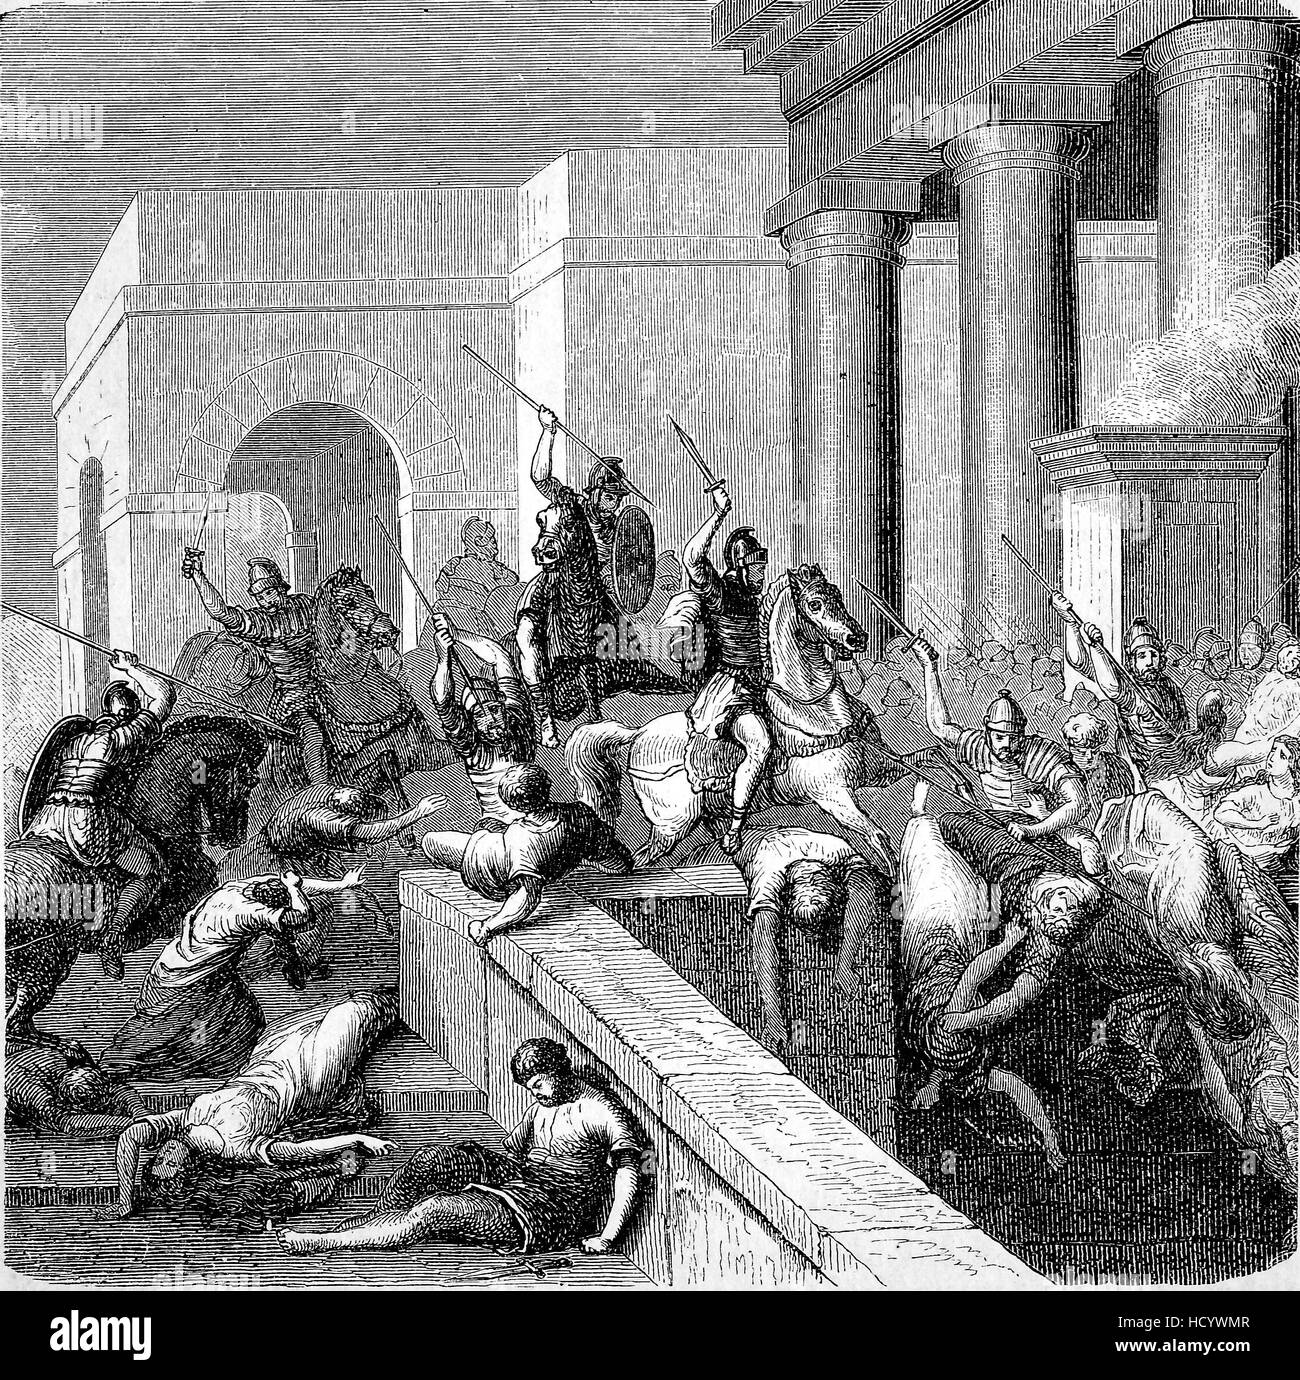 Schlacht von verschiedenen Parteien im alten Rom, 87 v. Chr., die Geschichte des antiken Rom, Römisches Reich, Italien Stockfoto